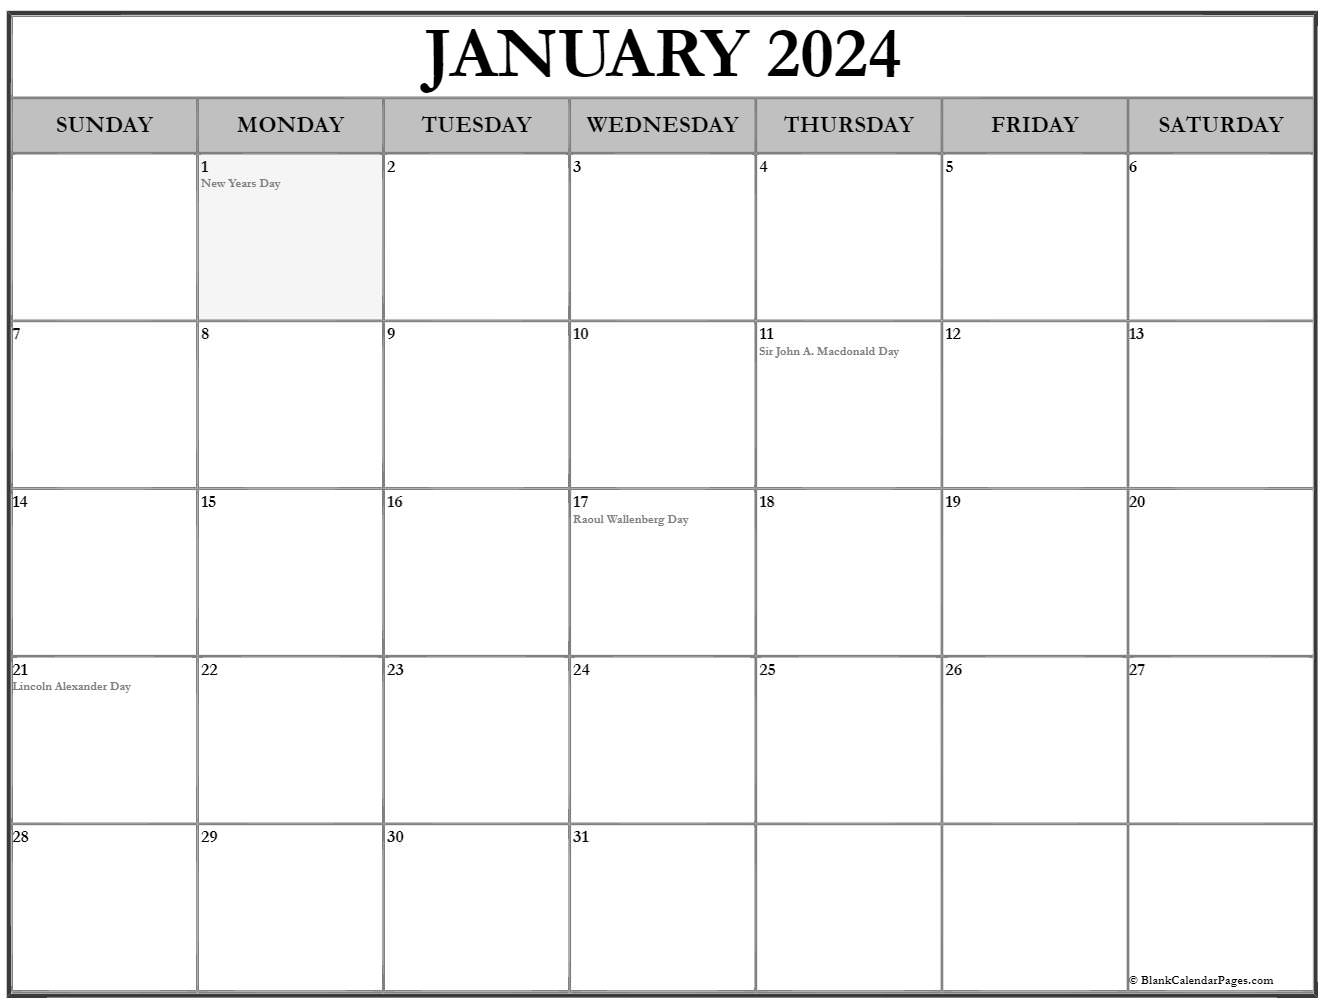 Calendar January 2024 With Holidays - Printable Calendar